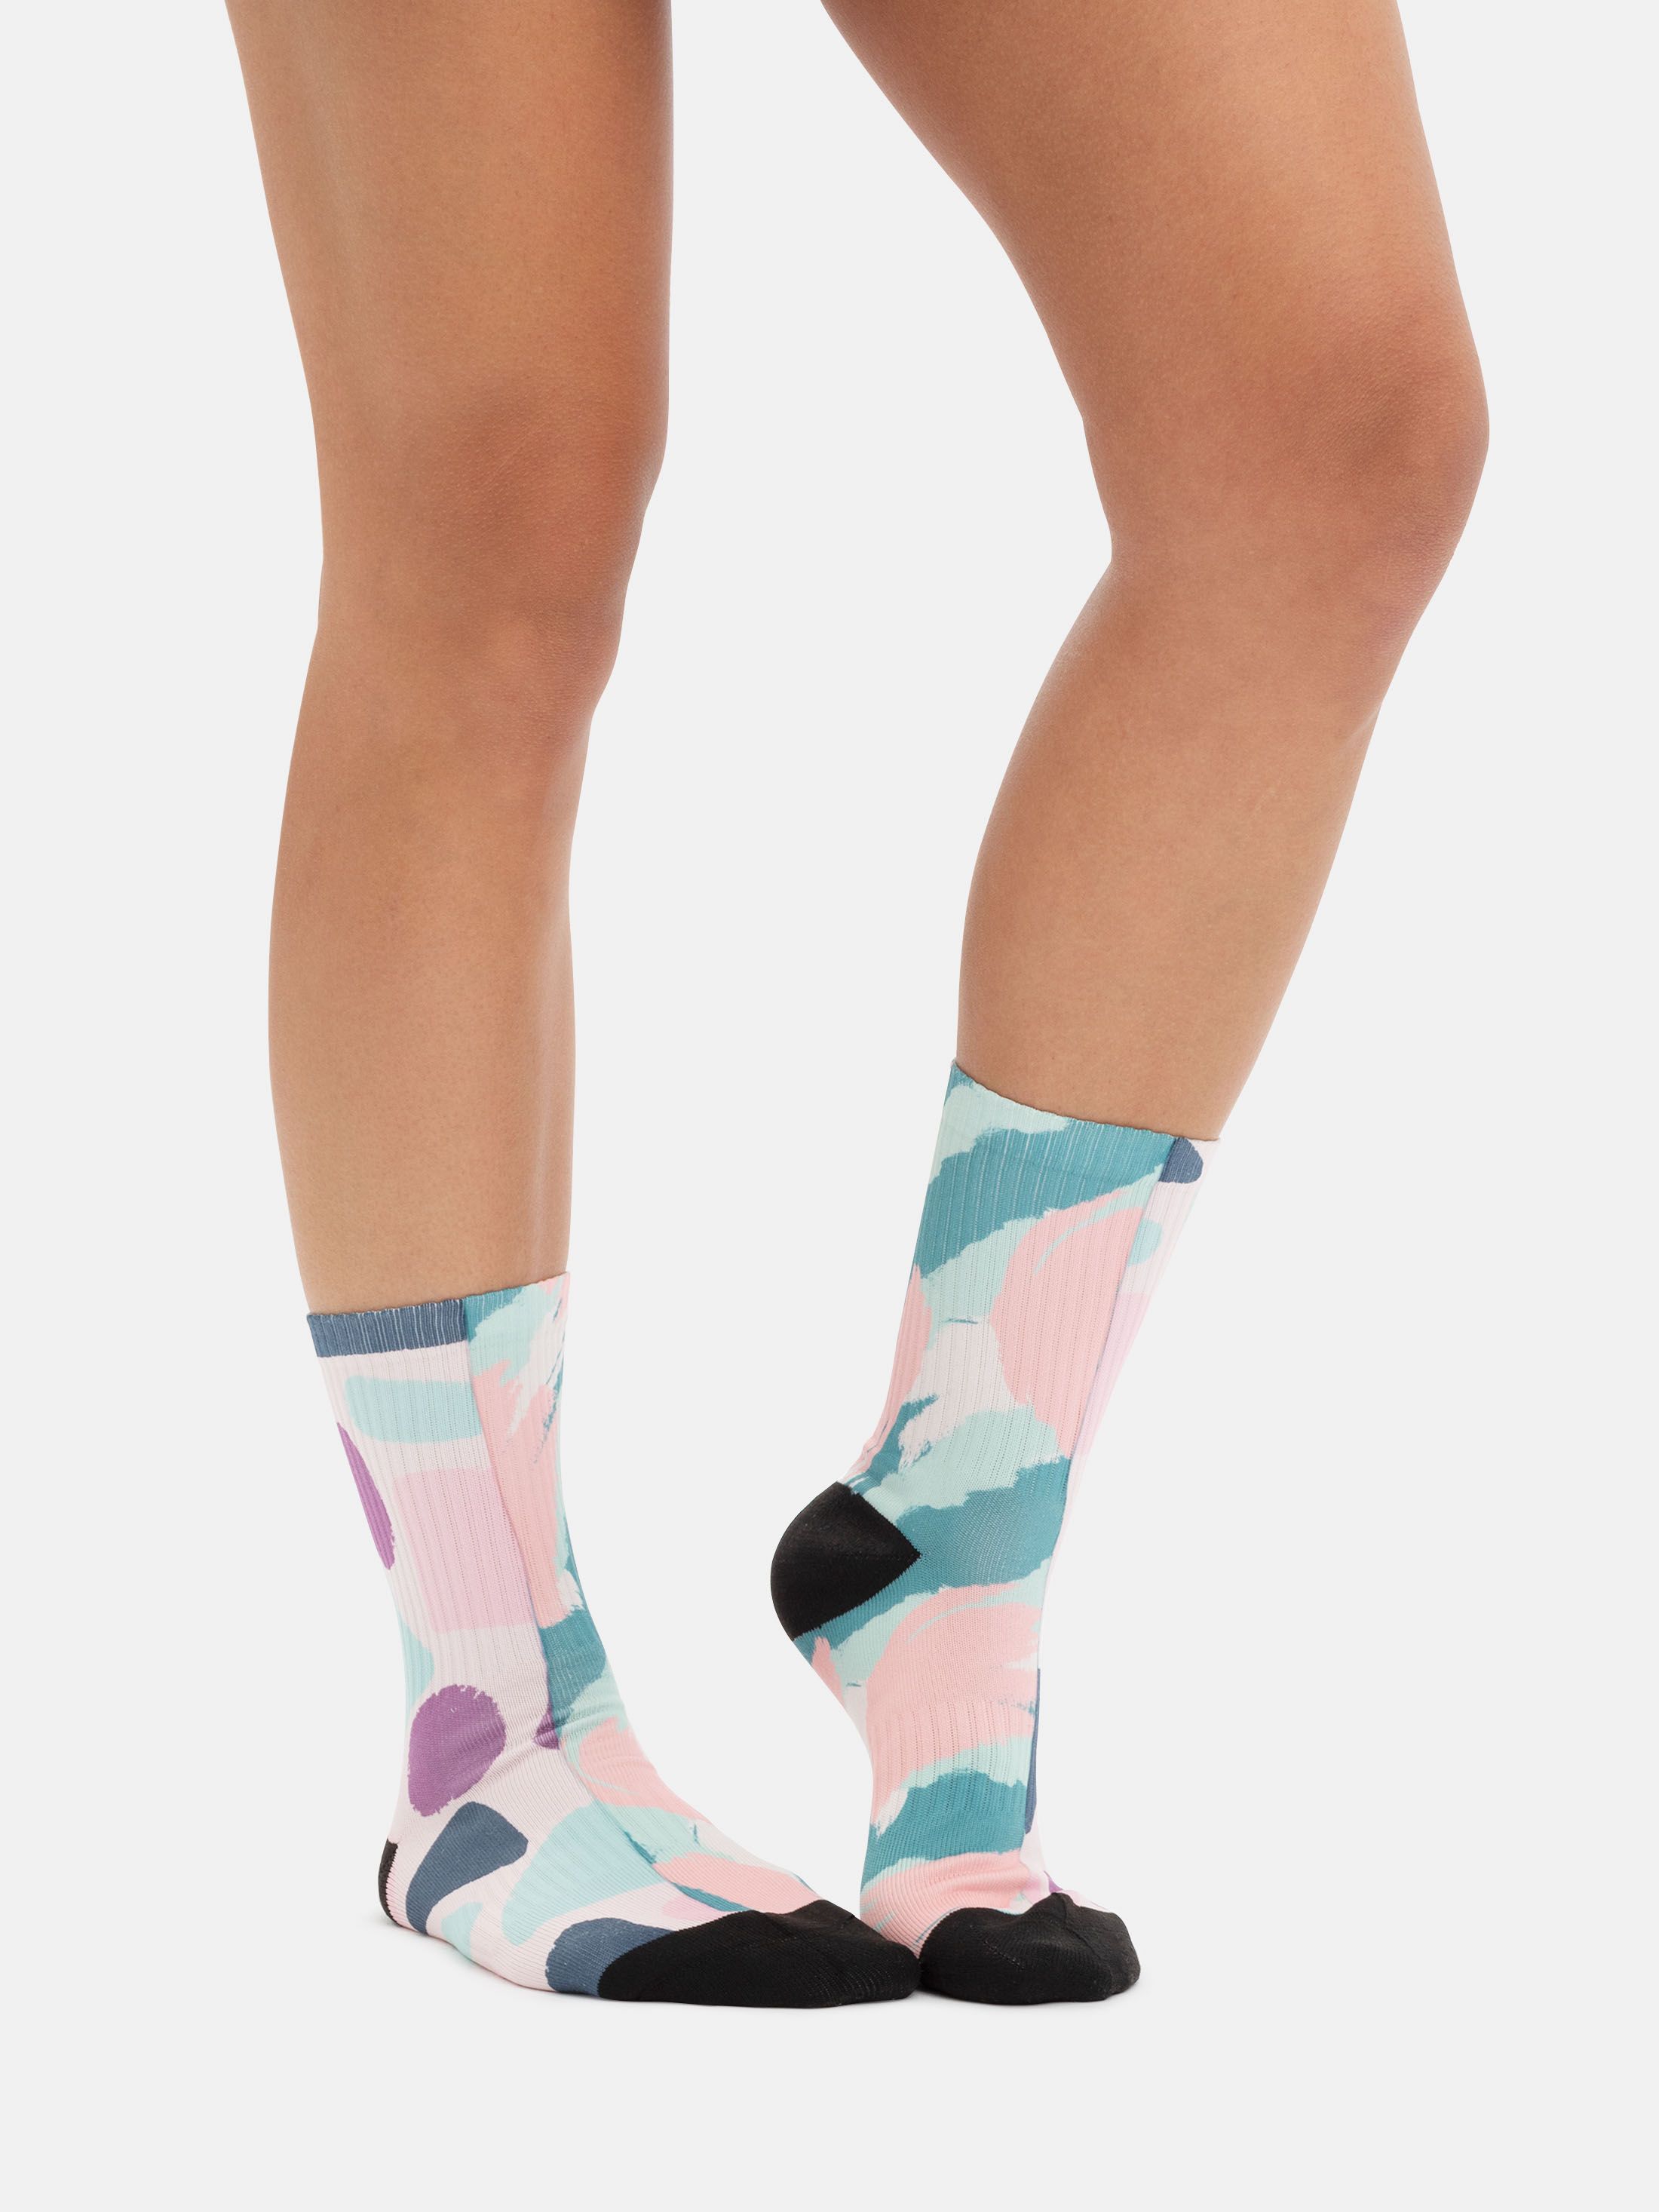 details of custom made socks